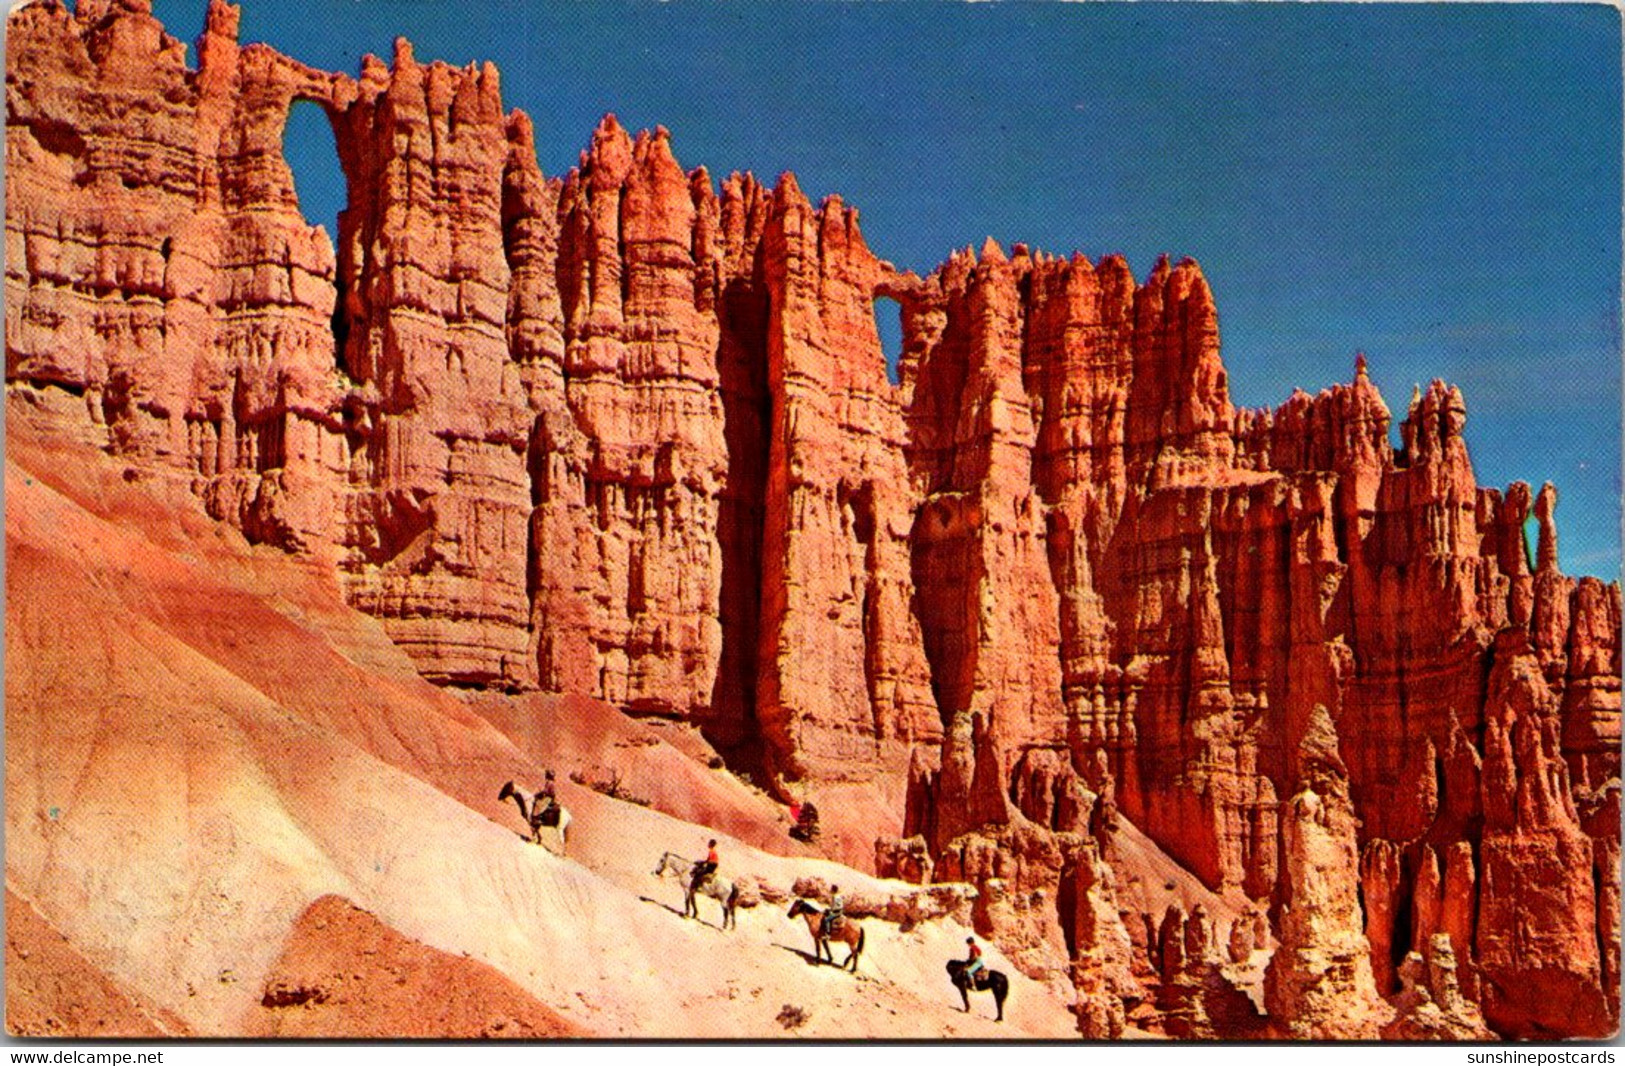 Utah Bryce Canyon National Park Horseback Riders At The Wall Of Windows - Bryce Canyon